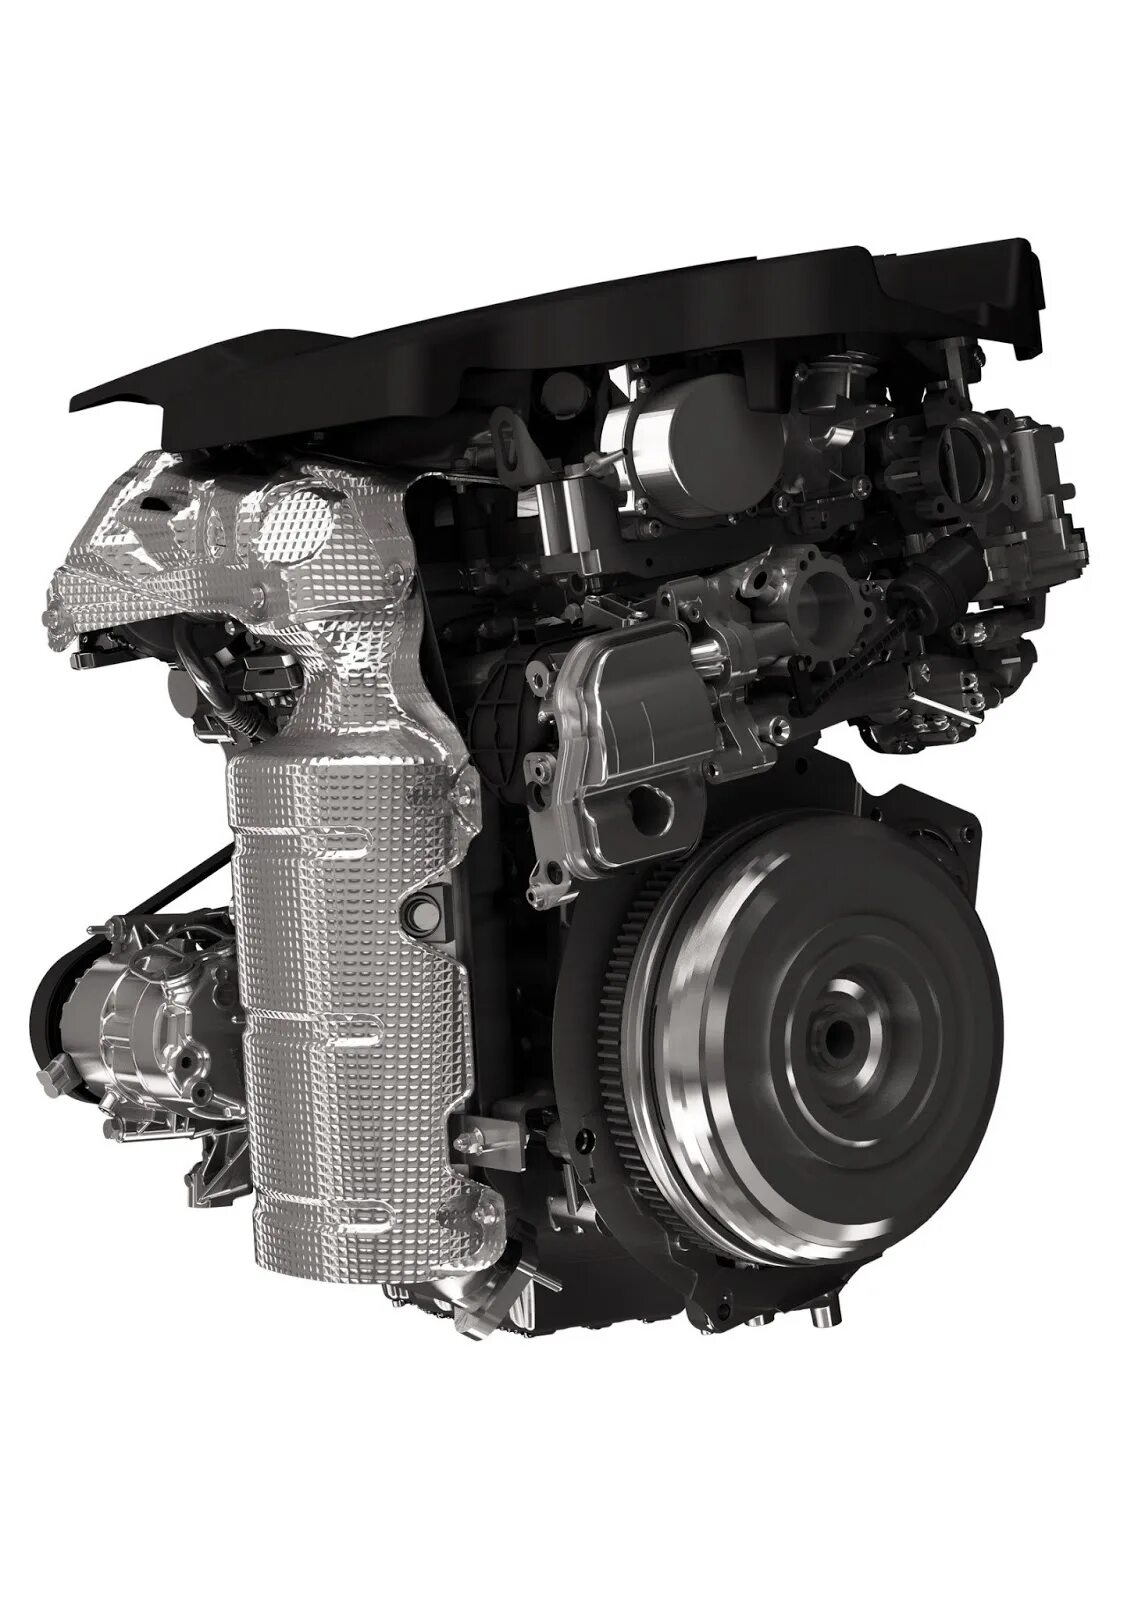 Дизель фиат отзывы. Multijet 2.0 Diesel. Turbo actuator Fiat 1.6 Multijet. Фиат дизельный. Fiat Superjet дизель.